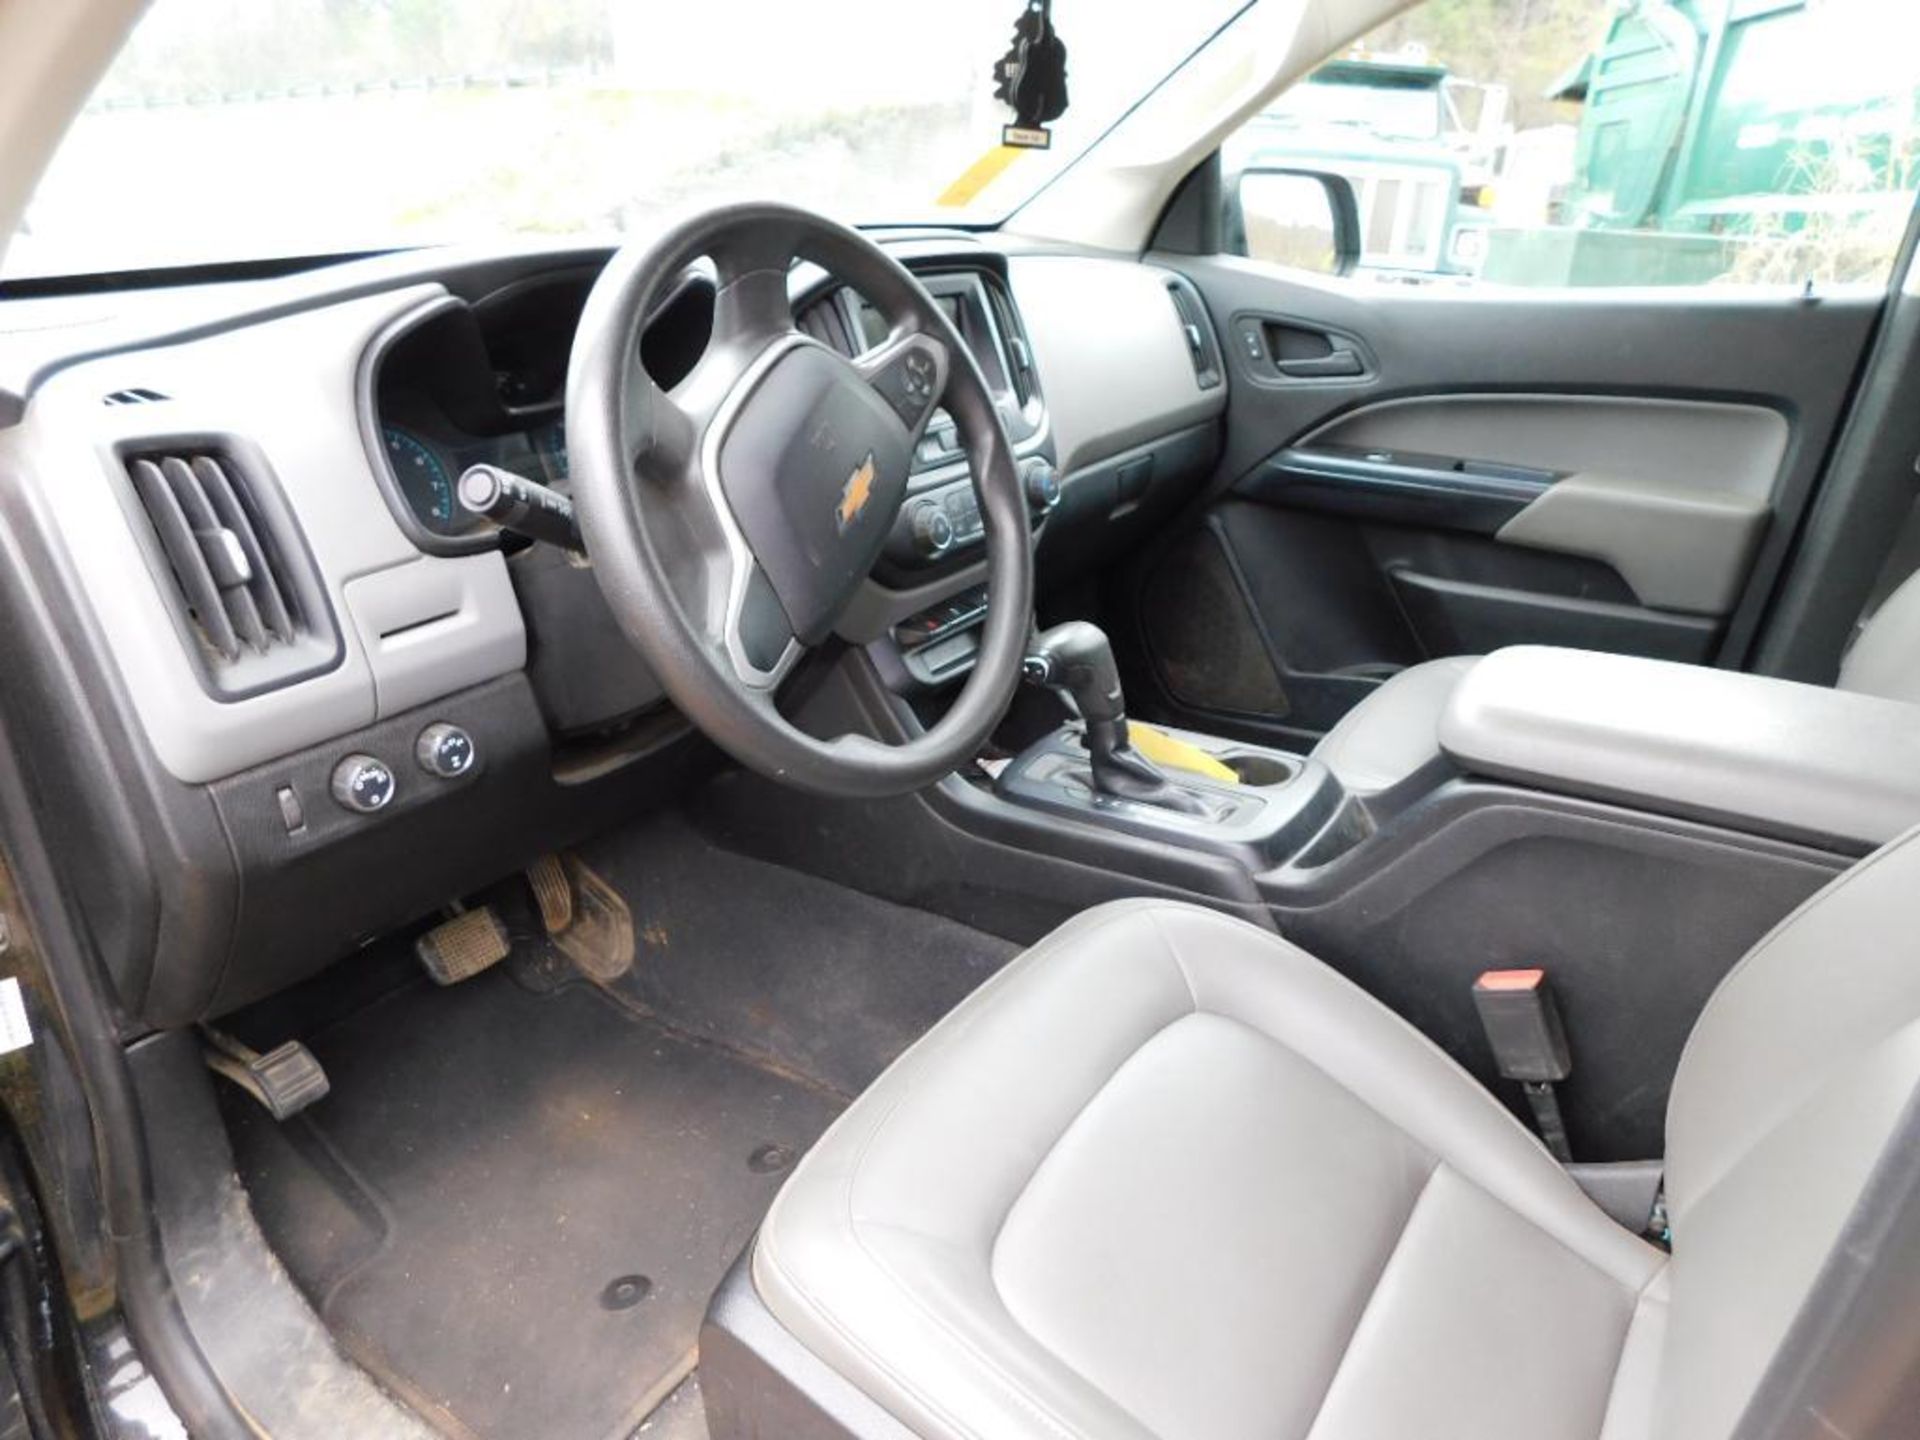 2019 Chevy Colorado Crew Cab, 4-Wheel Drive, VIN 1GCGTBEN7K1339597, 68,701 Miles Indicated, Auto Tir - Image 7 of 7